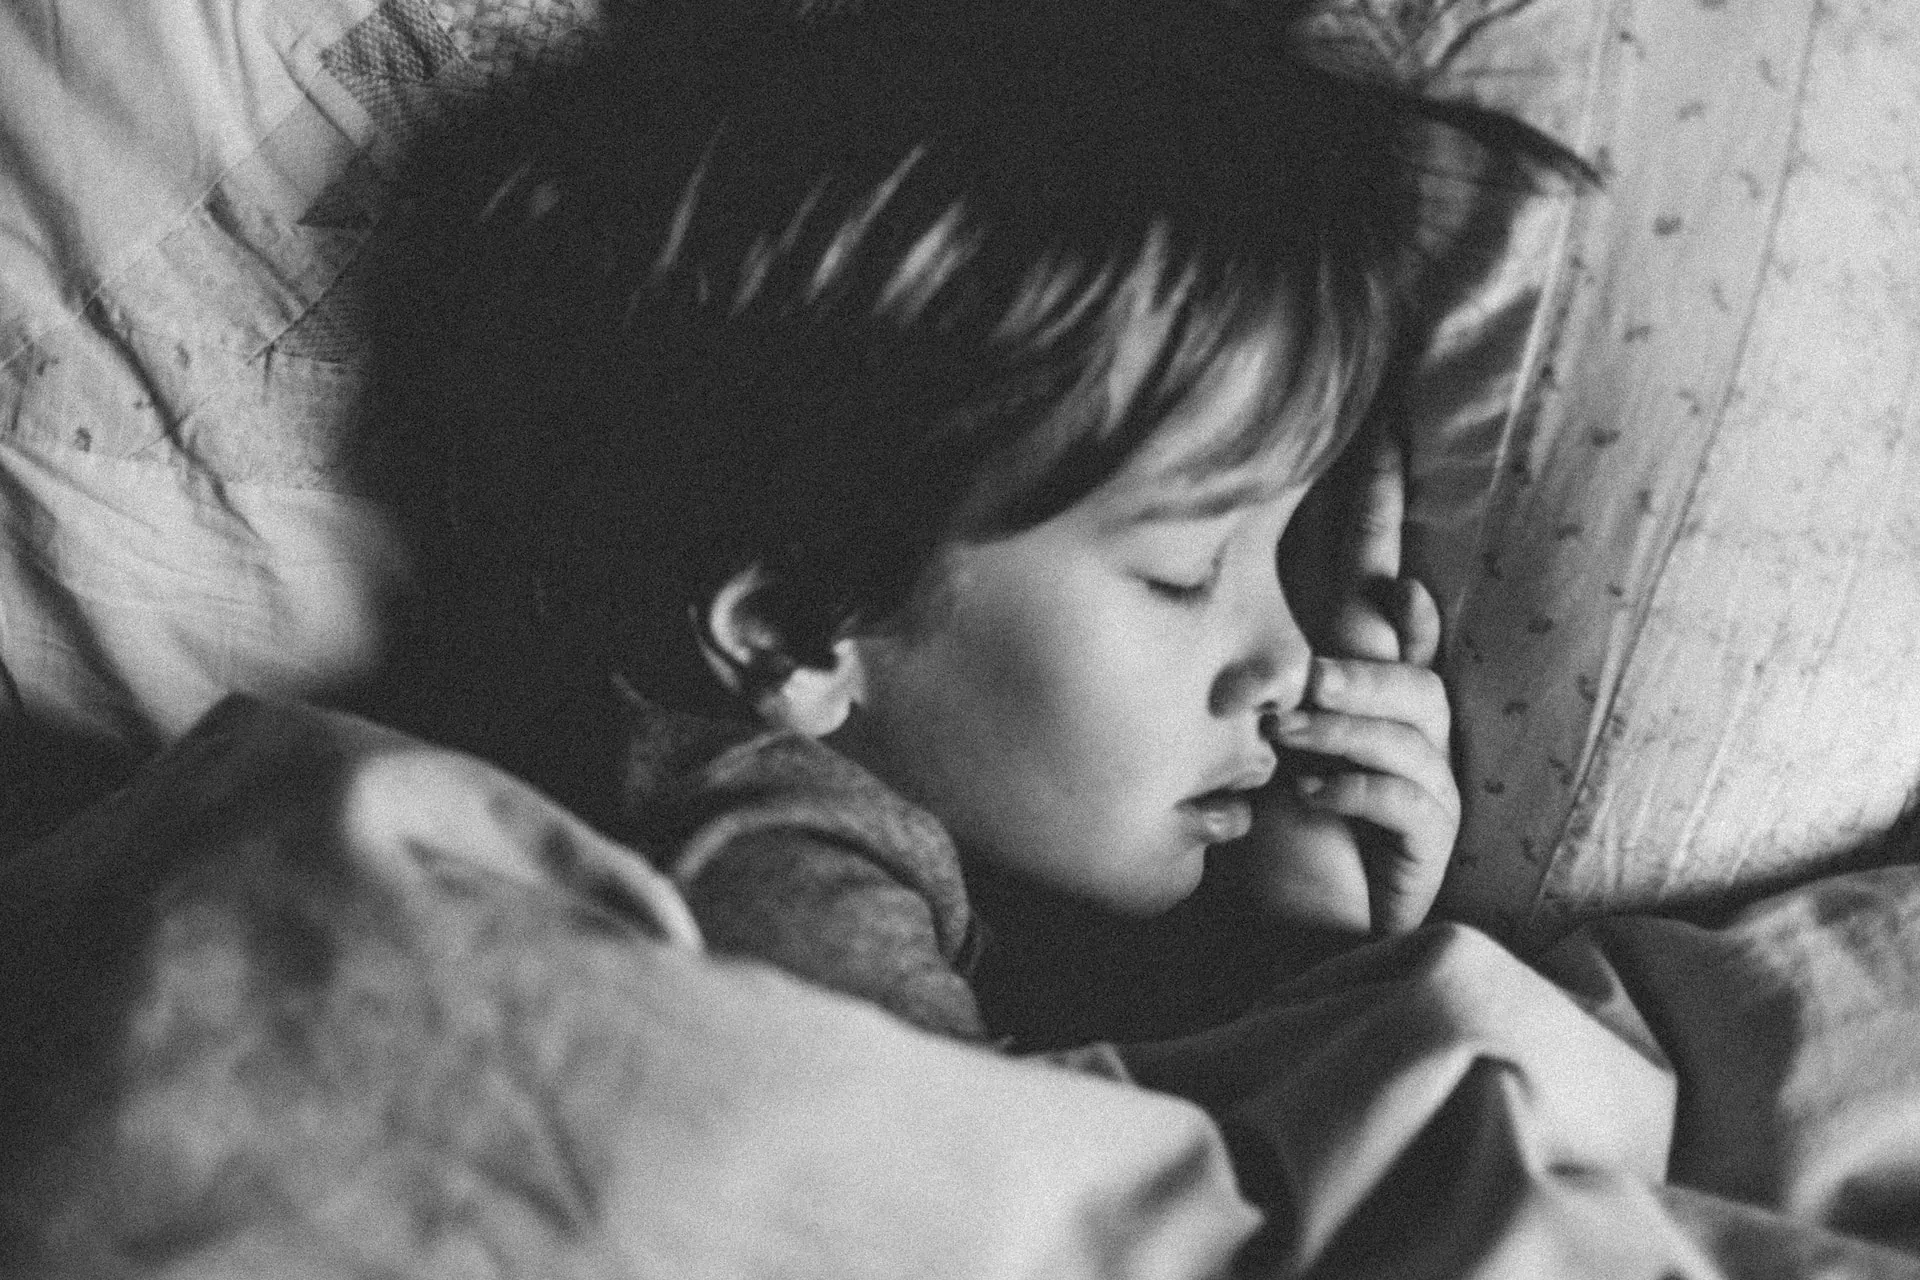 كيف يمكن تعويد الأطفال على النوم مبكرًا؟ (آنسبلاش)